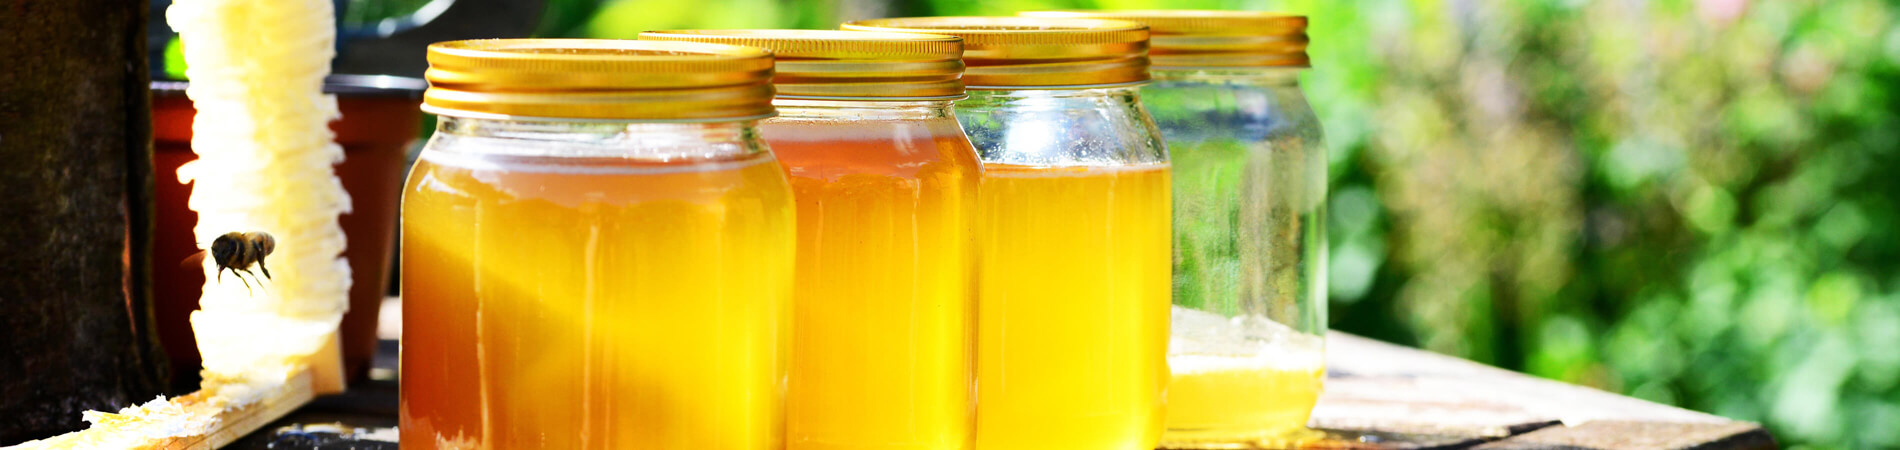 Koop honing van de imker